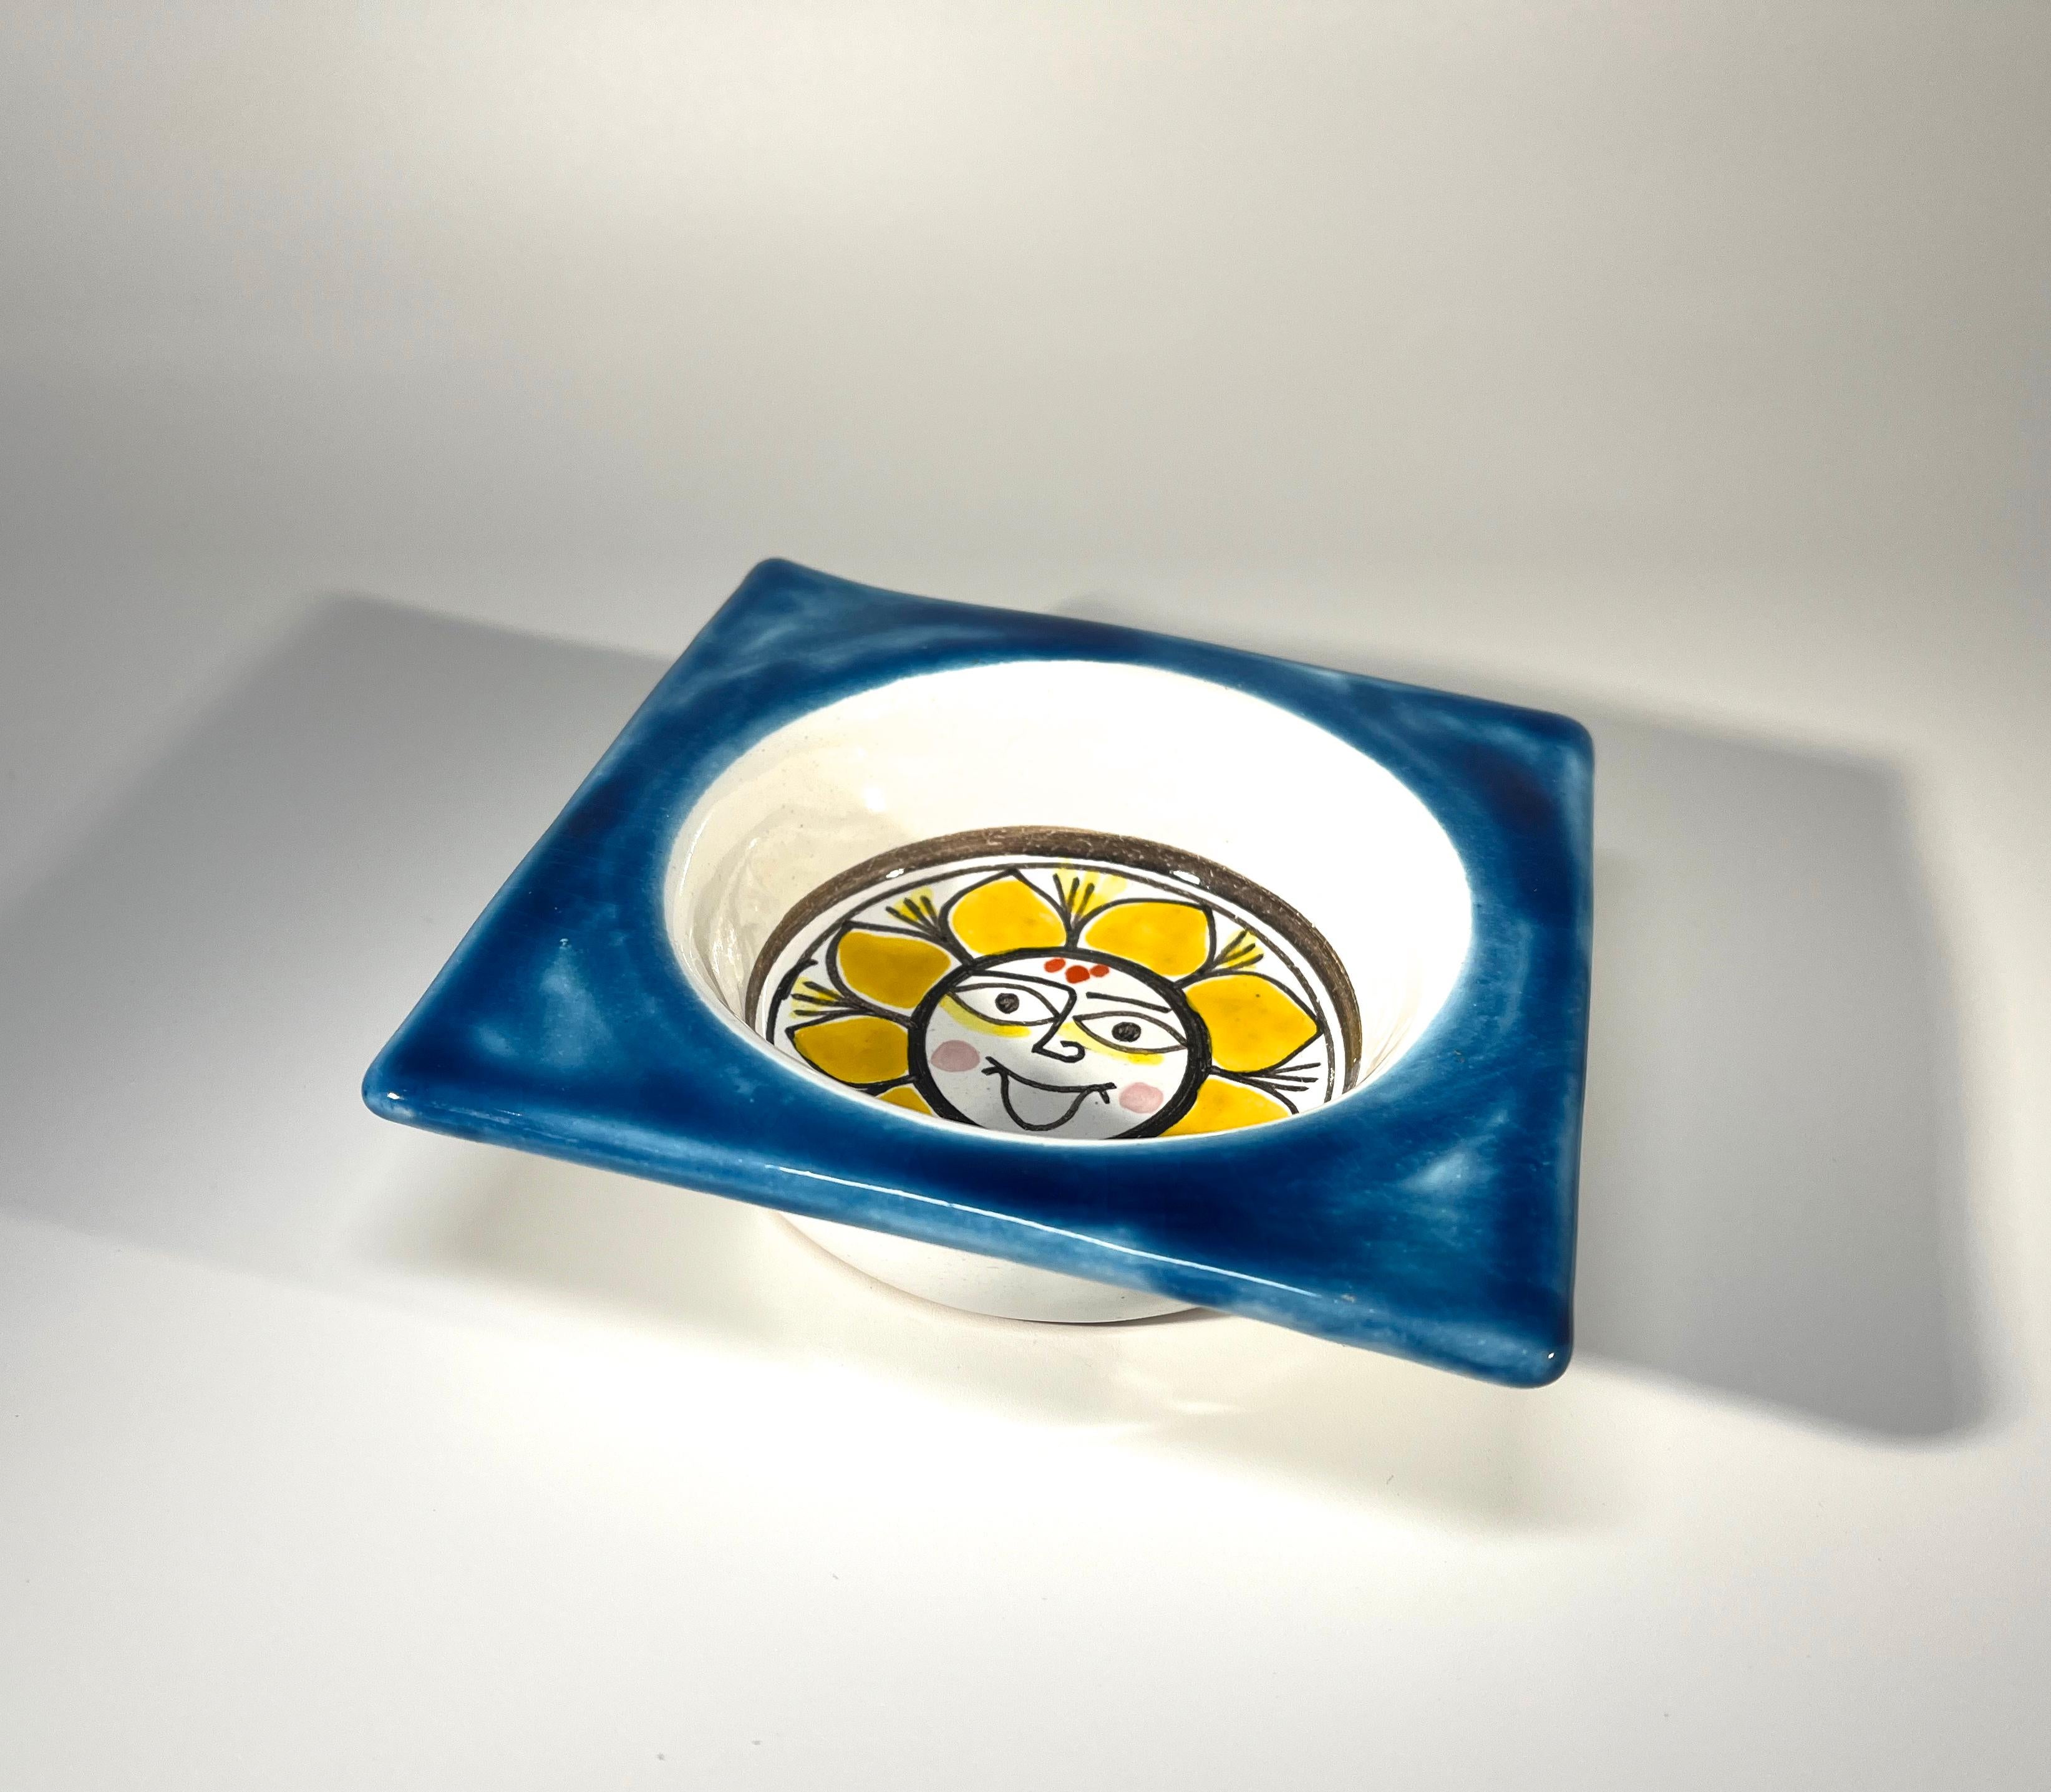 DeSimone d'Italie, 'Tournesol ensoleillé'  est typique de l'art coloré et ludique de DeSimone.
Motif de tournesol jaune peint à la main au centre et bordé d'un bleu vif
Ce petit bol est lourd et presque carré -  une super petite pièce pour le